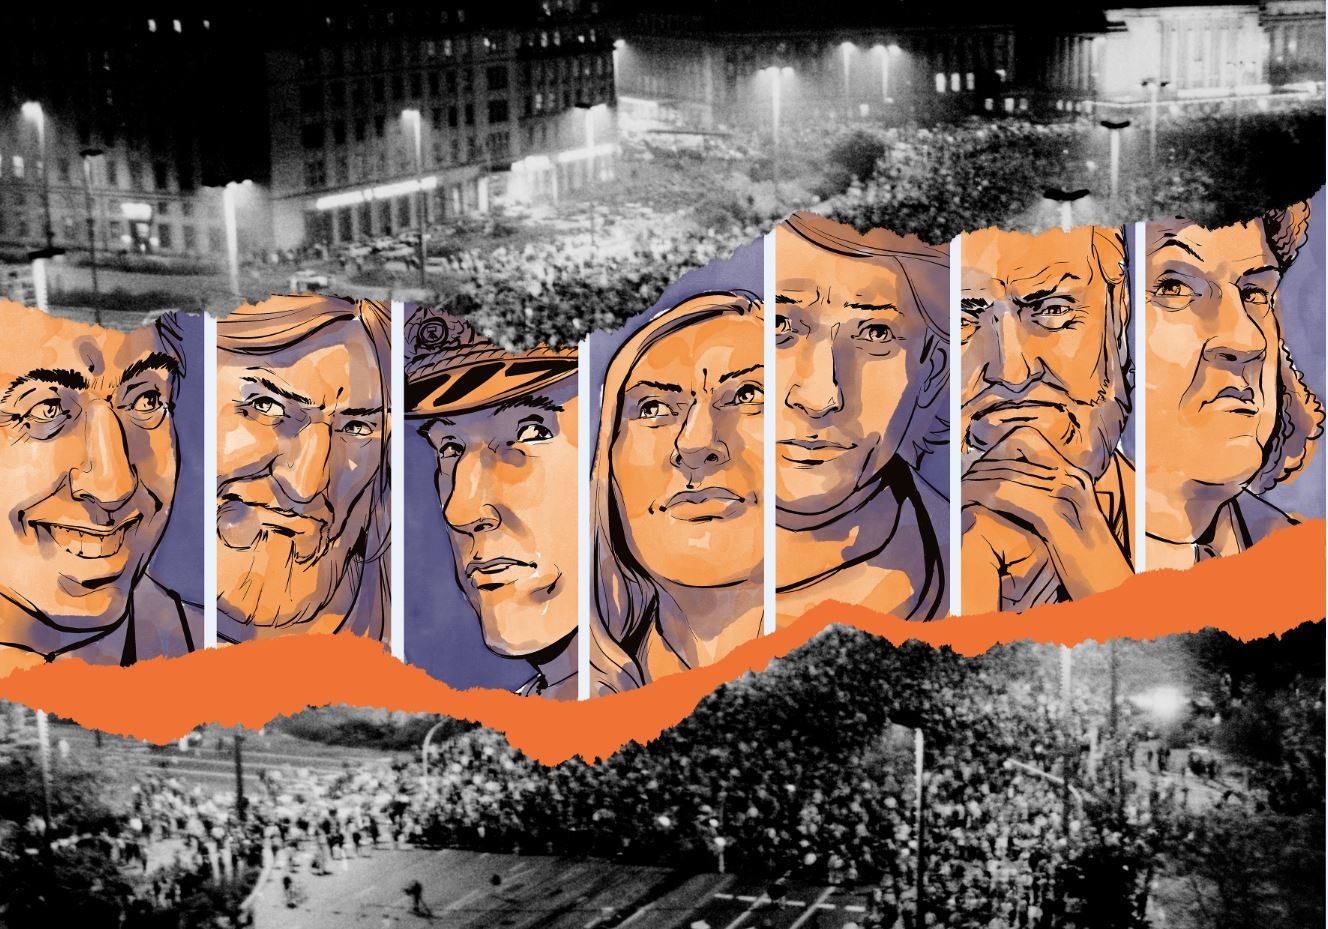 Die Grafik "Key Visual" zeigt die Gesichter der Spielfiguren. Im Hintergrund sind Demonstranten zu sehen. Gestaltet wurde die Grafik von Playing History.